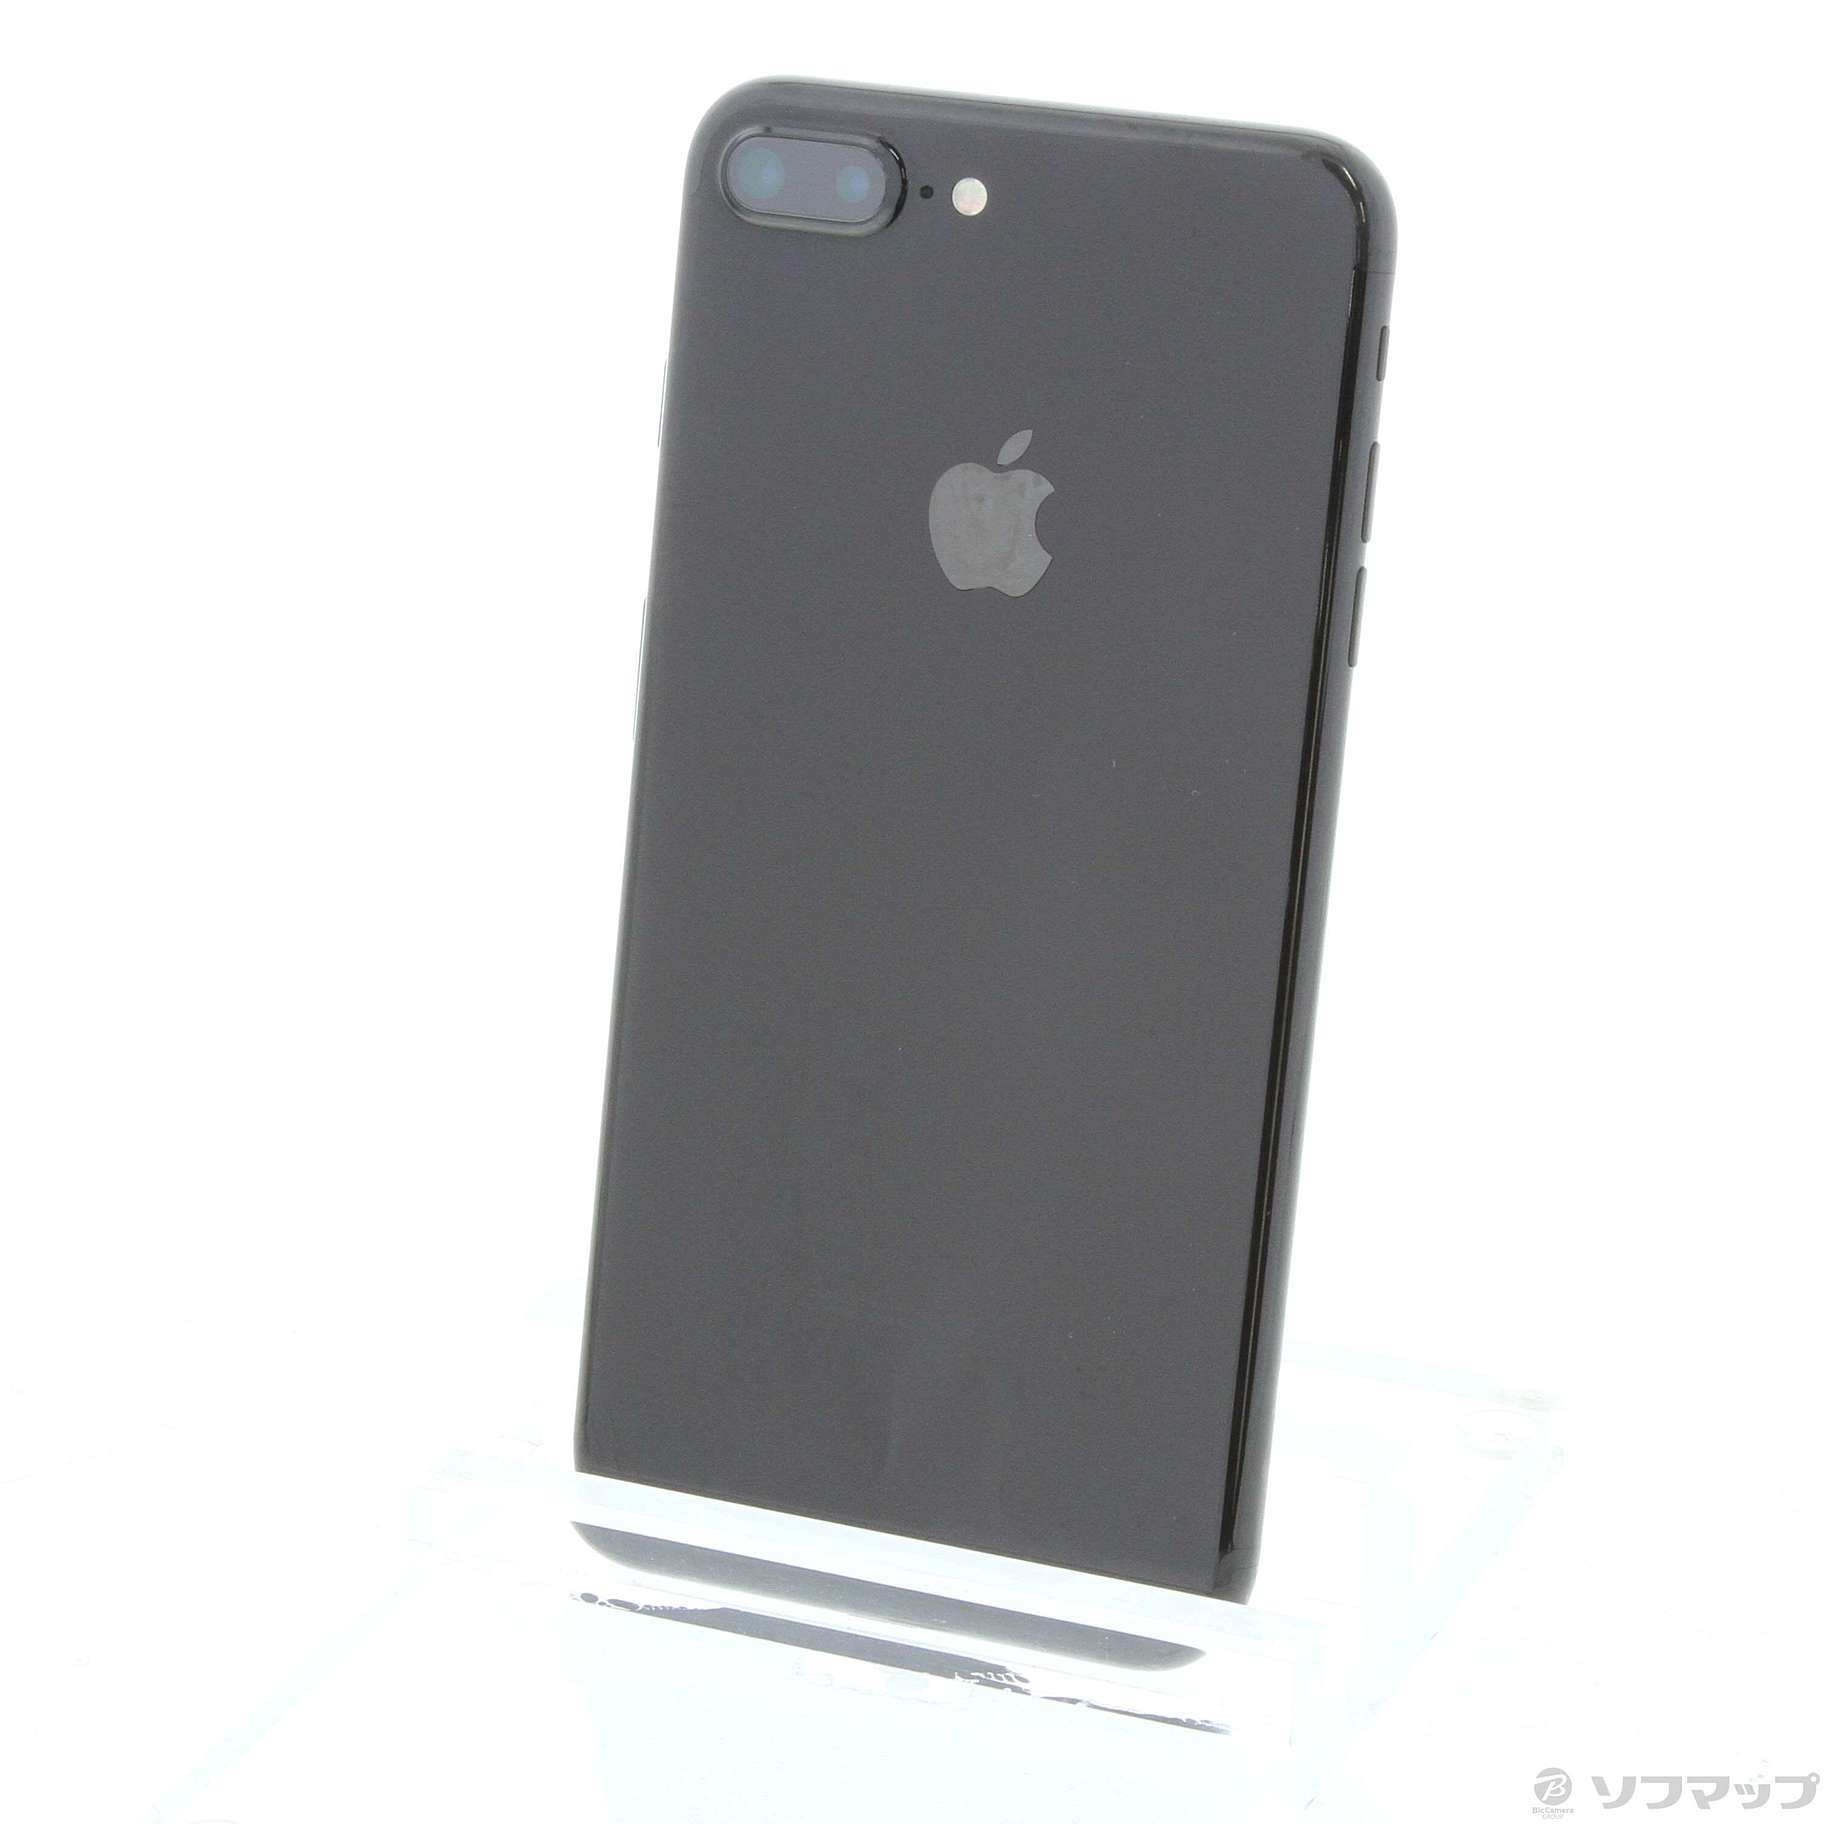 iPhone7 Plus JetBlack SIMフリー